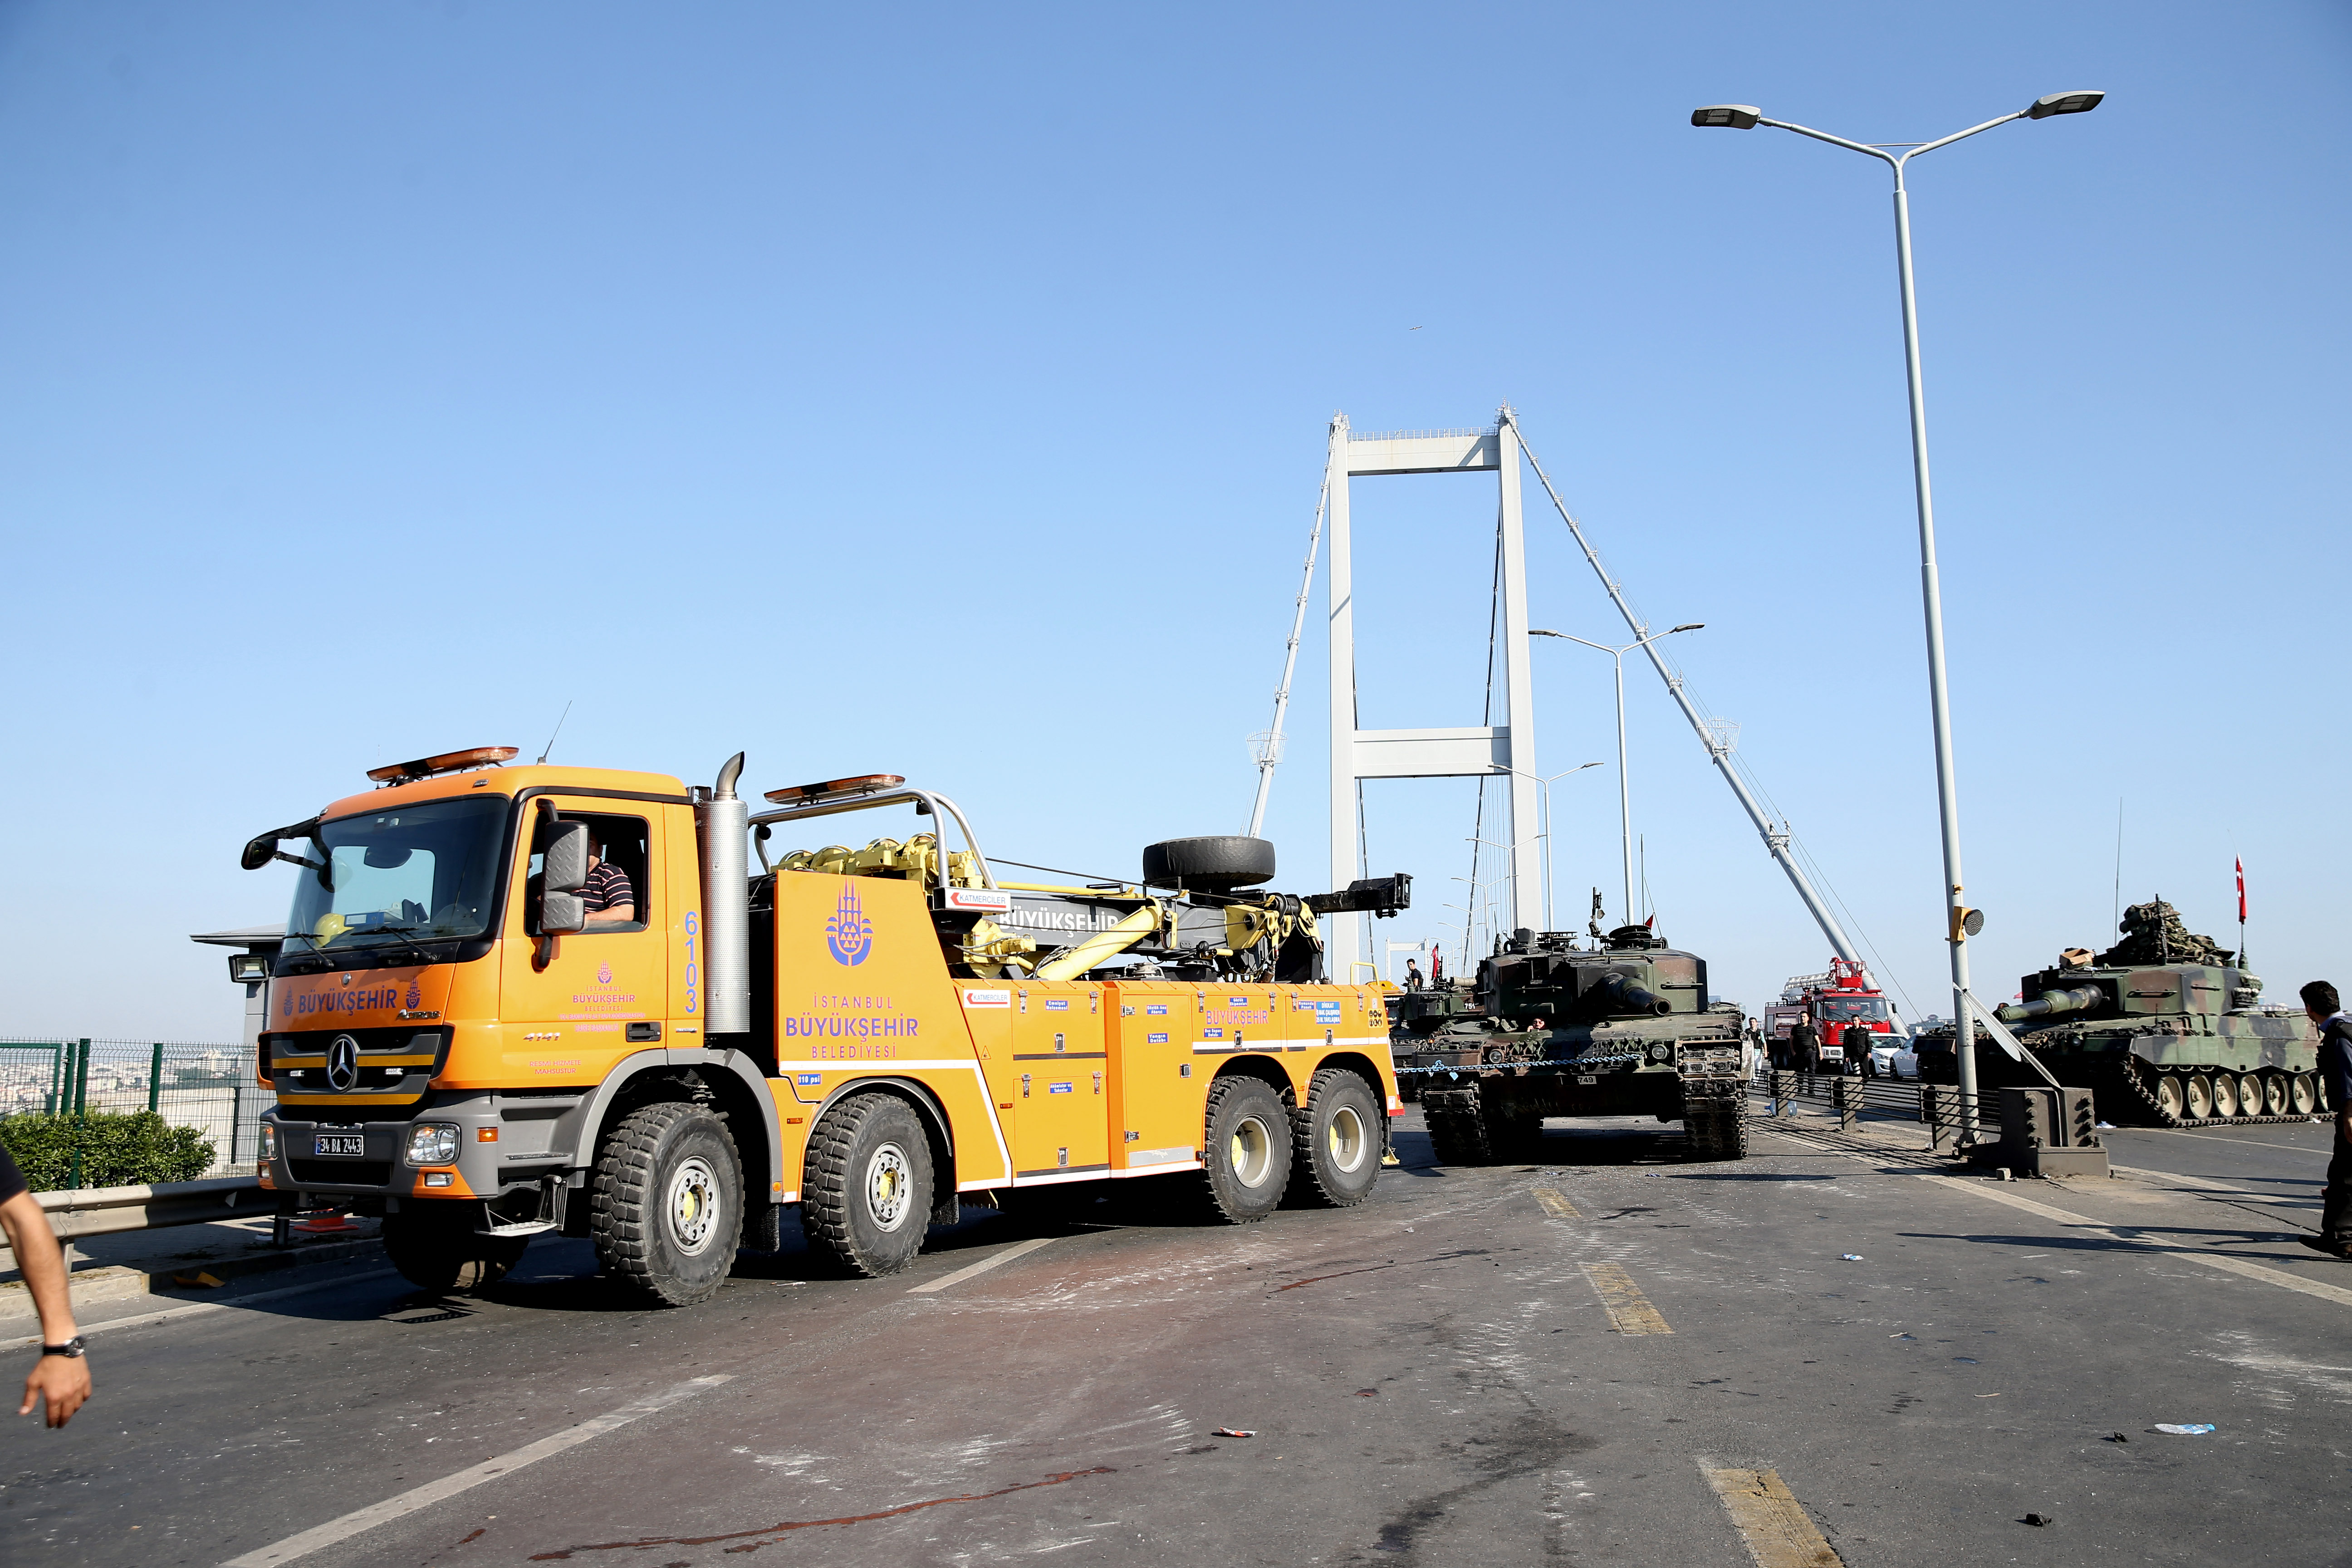 Фатих  Султан Мехмет и Босфорский мосты были открыты для движения после того, как полиция убрала танки.